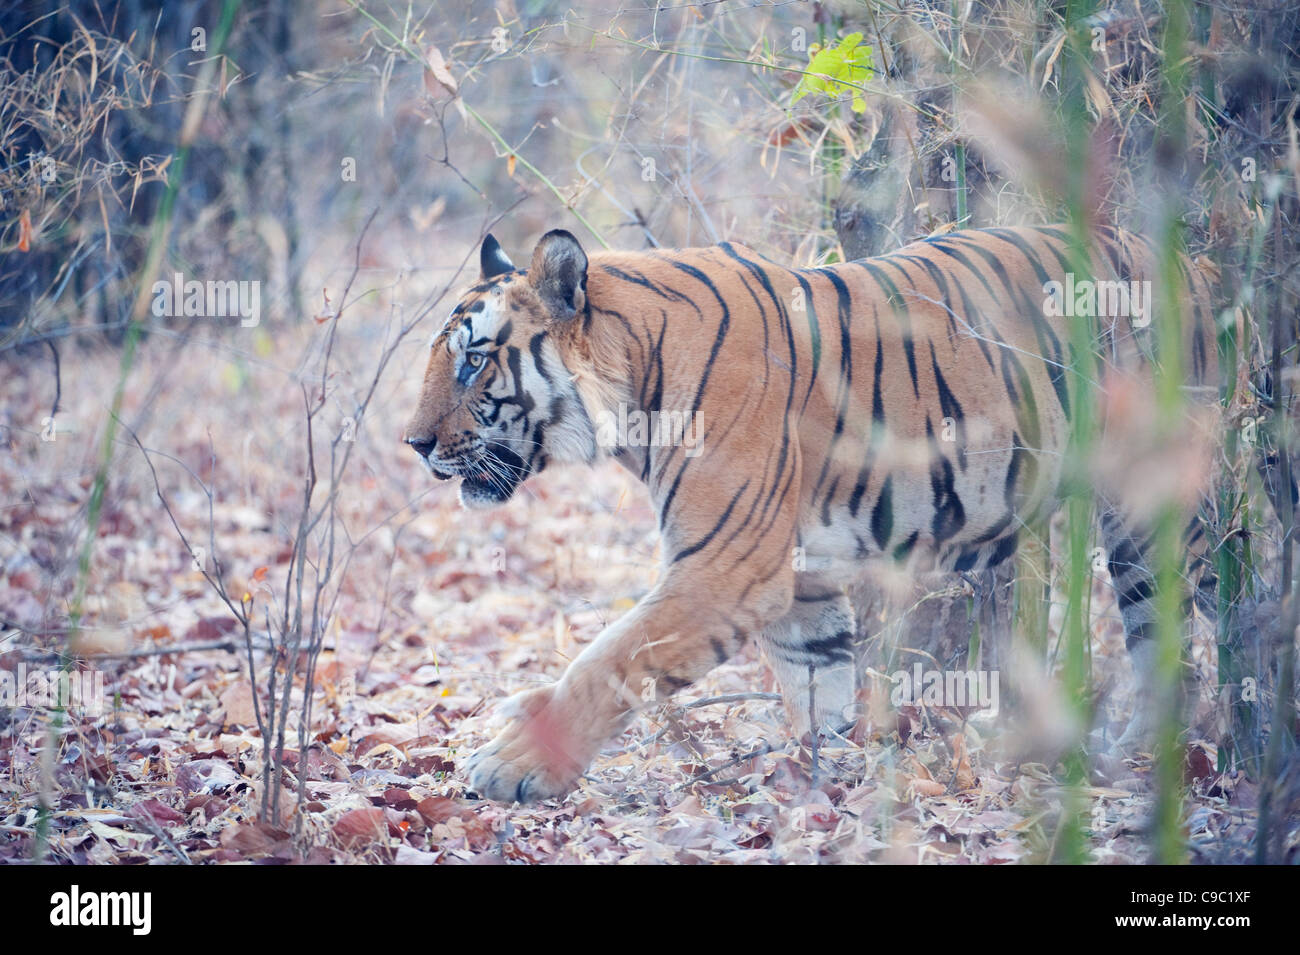 Male tiger Panthera tigris walking in long grass Bandhavgarh national park India Stock Photo